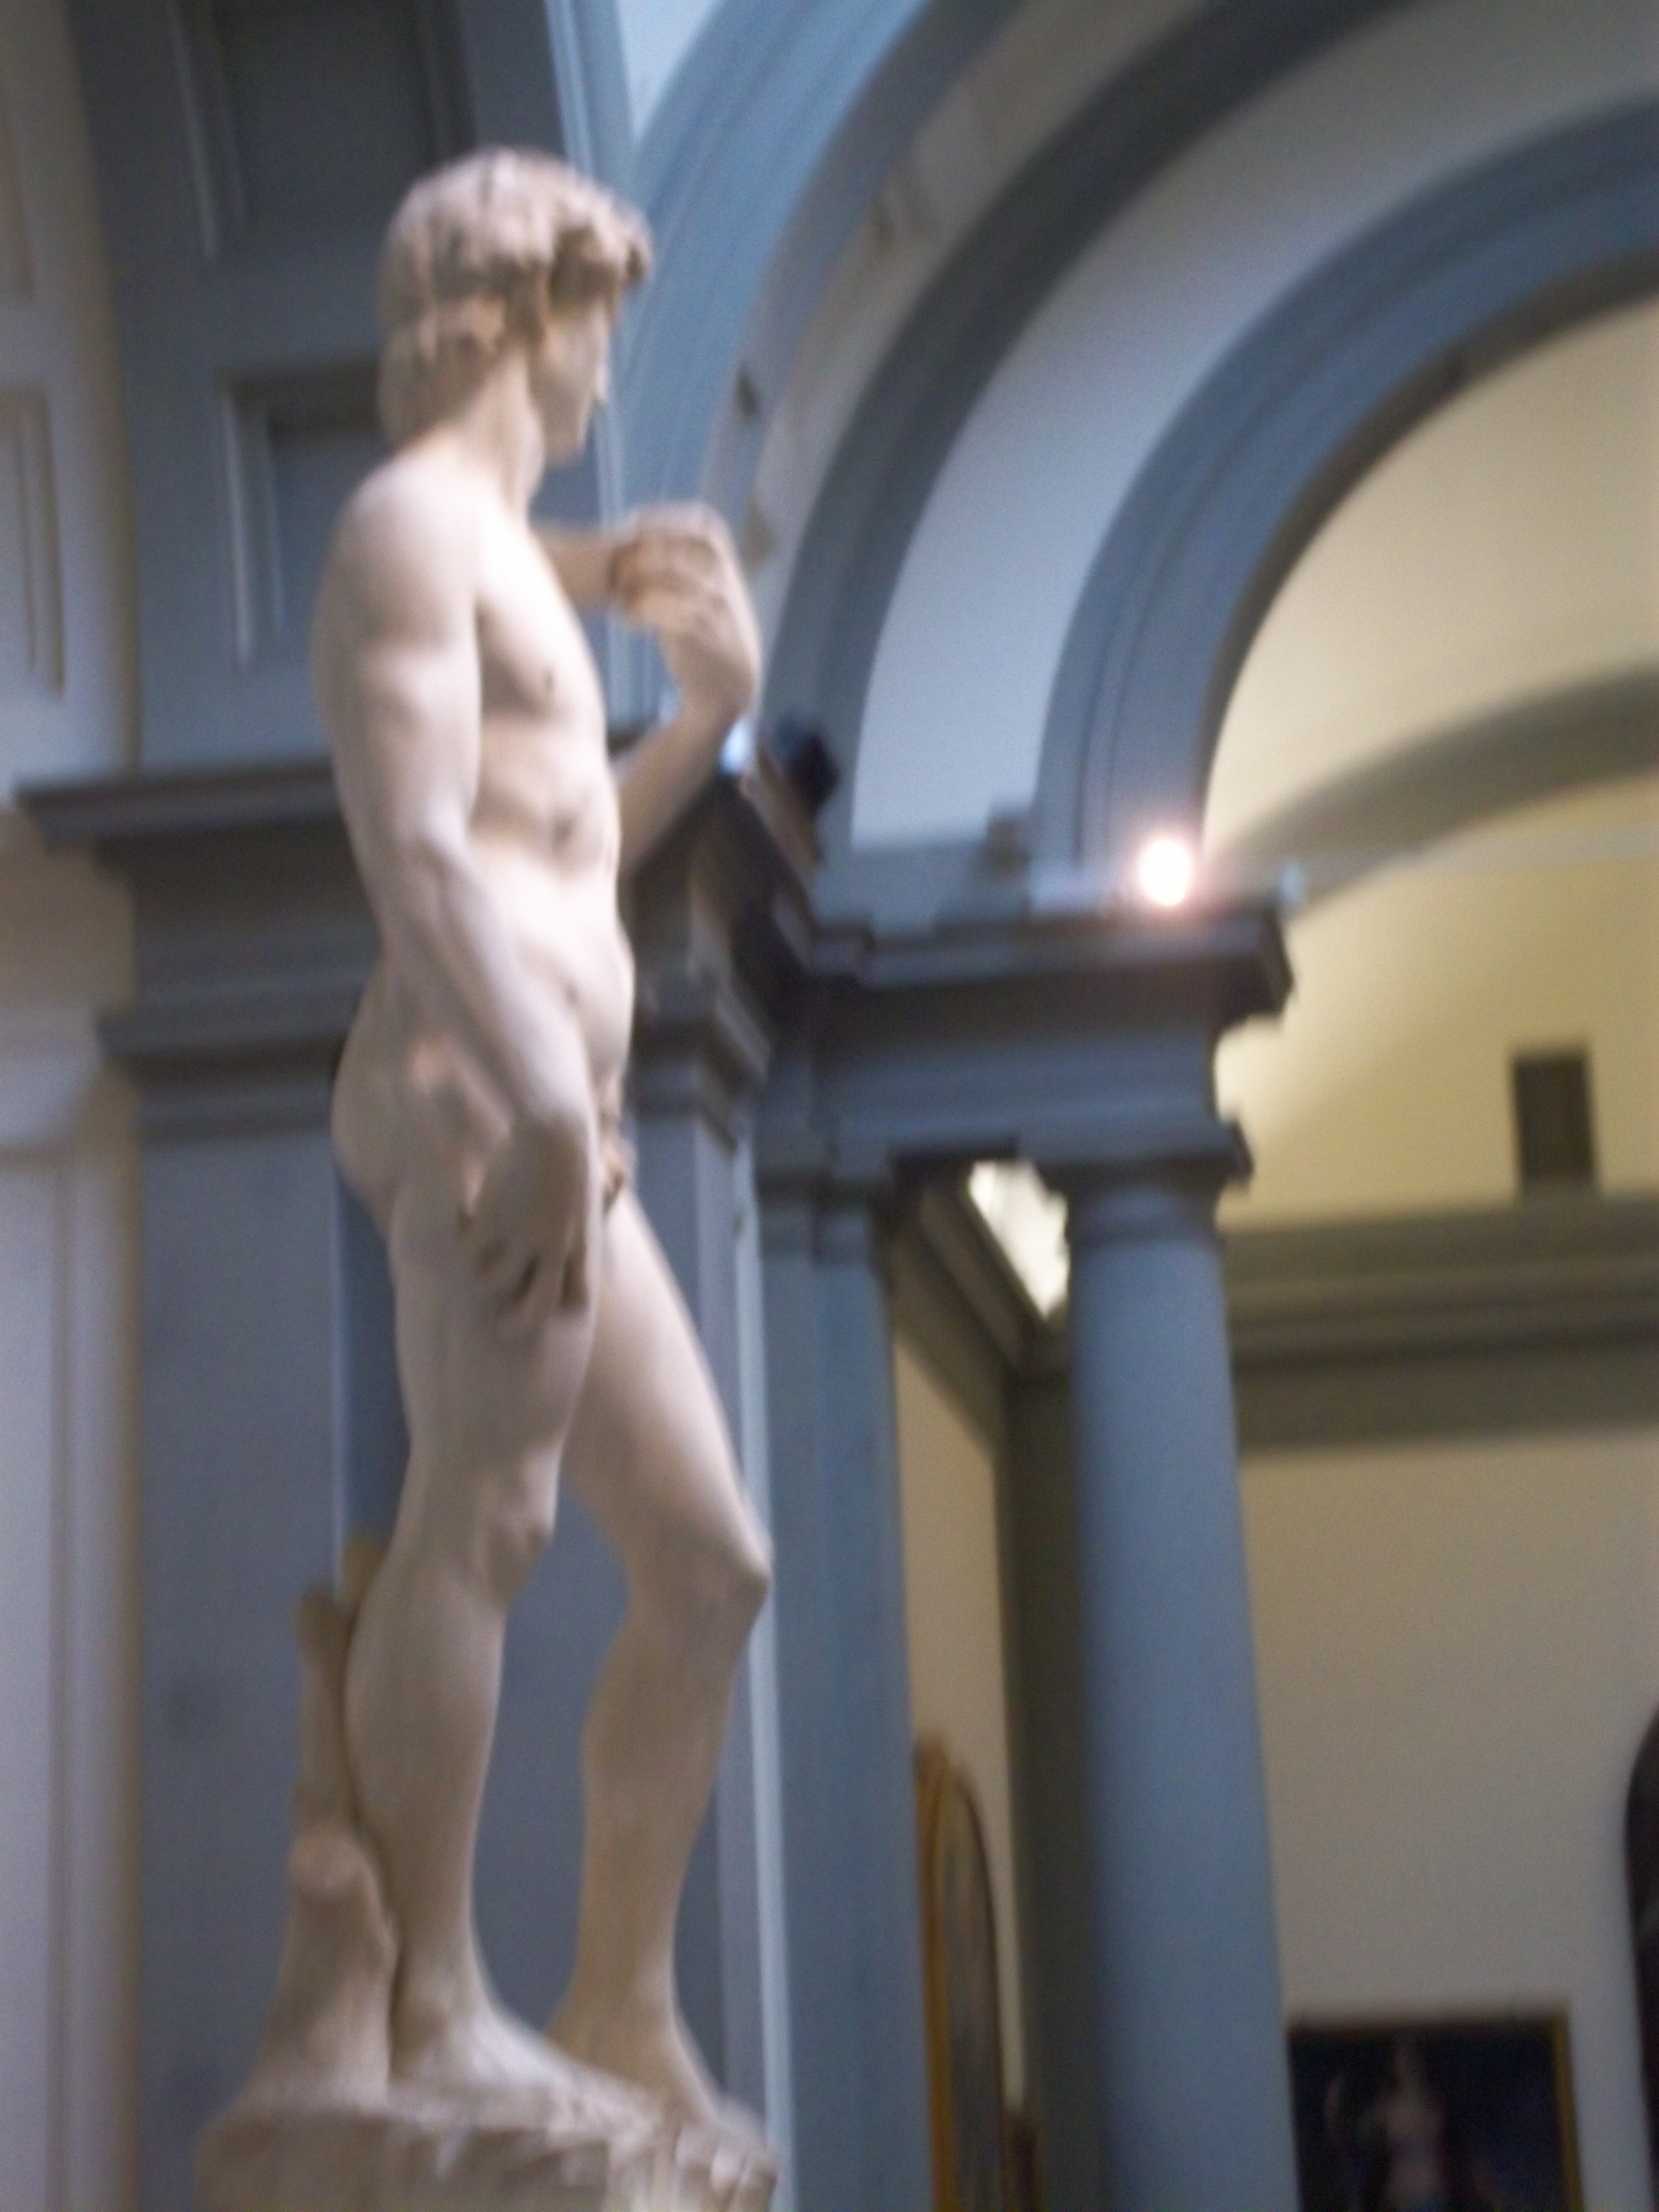 Galleria dell'Accademia Firenze